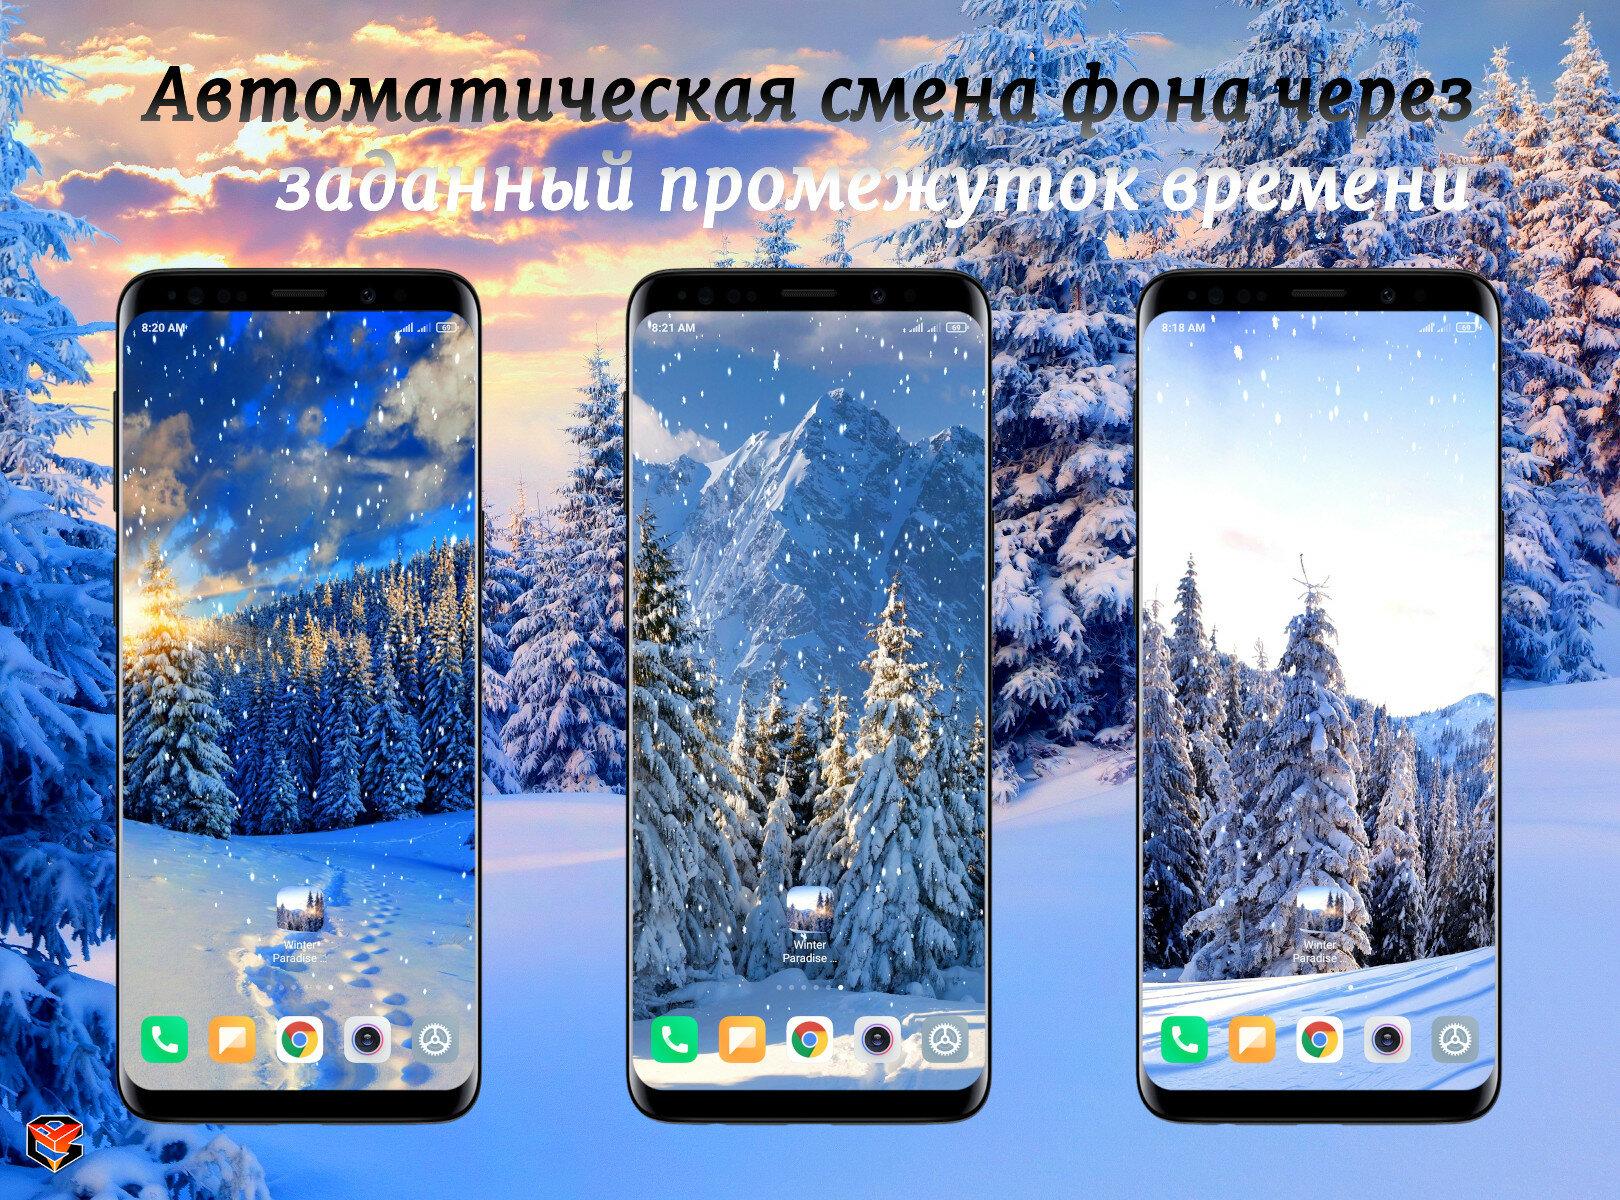 Скачать Зимний Рай Живые Обои 1.2.0 для Android